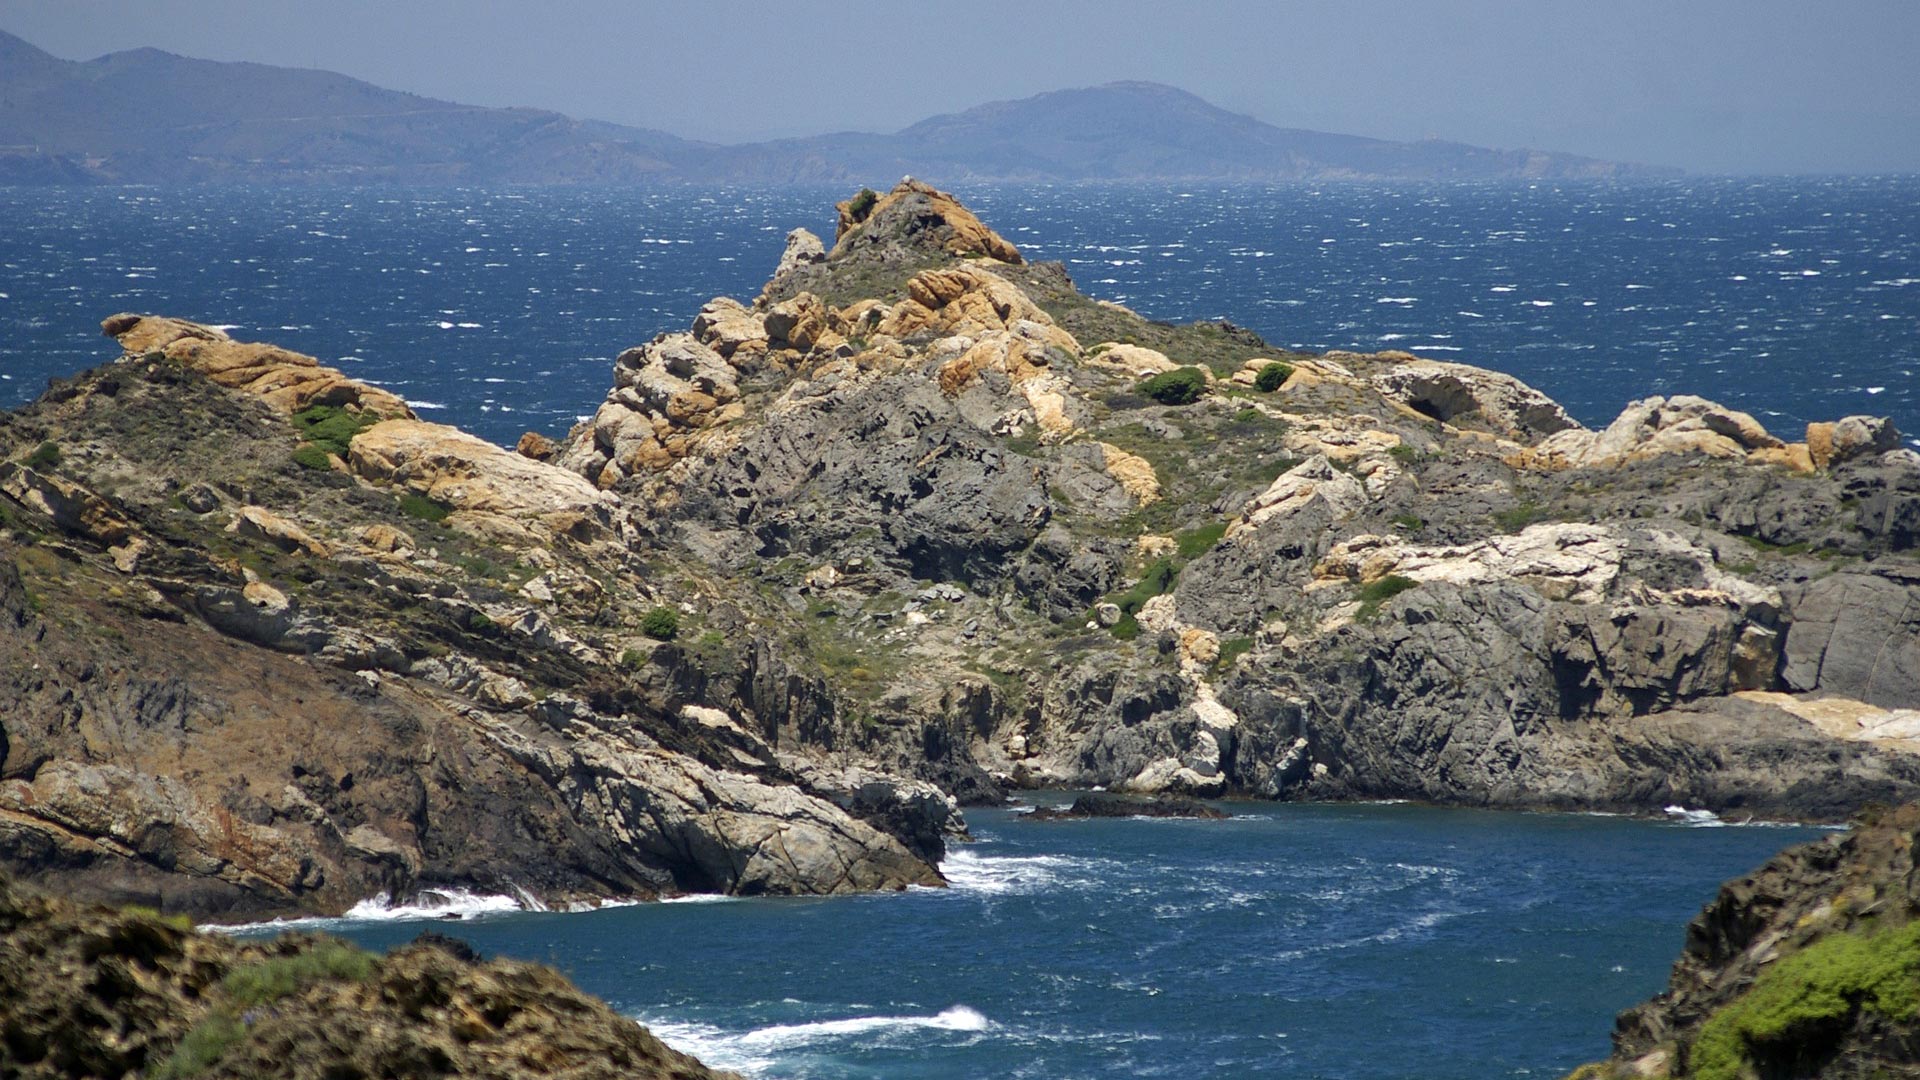 Anàlisi de la vulnerabilitat socioecològica als impactes del canvi climàtic a l’àrea marina de Cap de Creus i el Baix Empordà